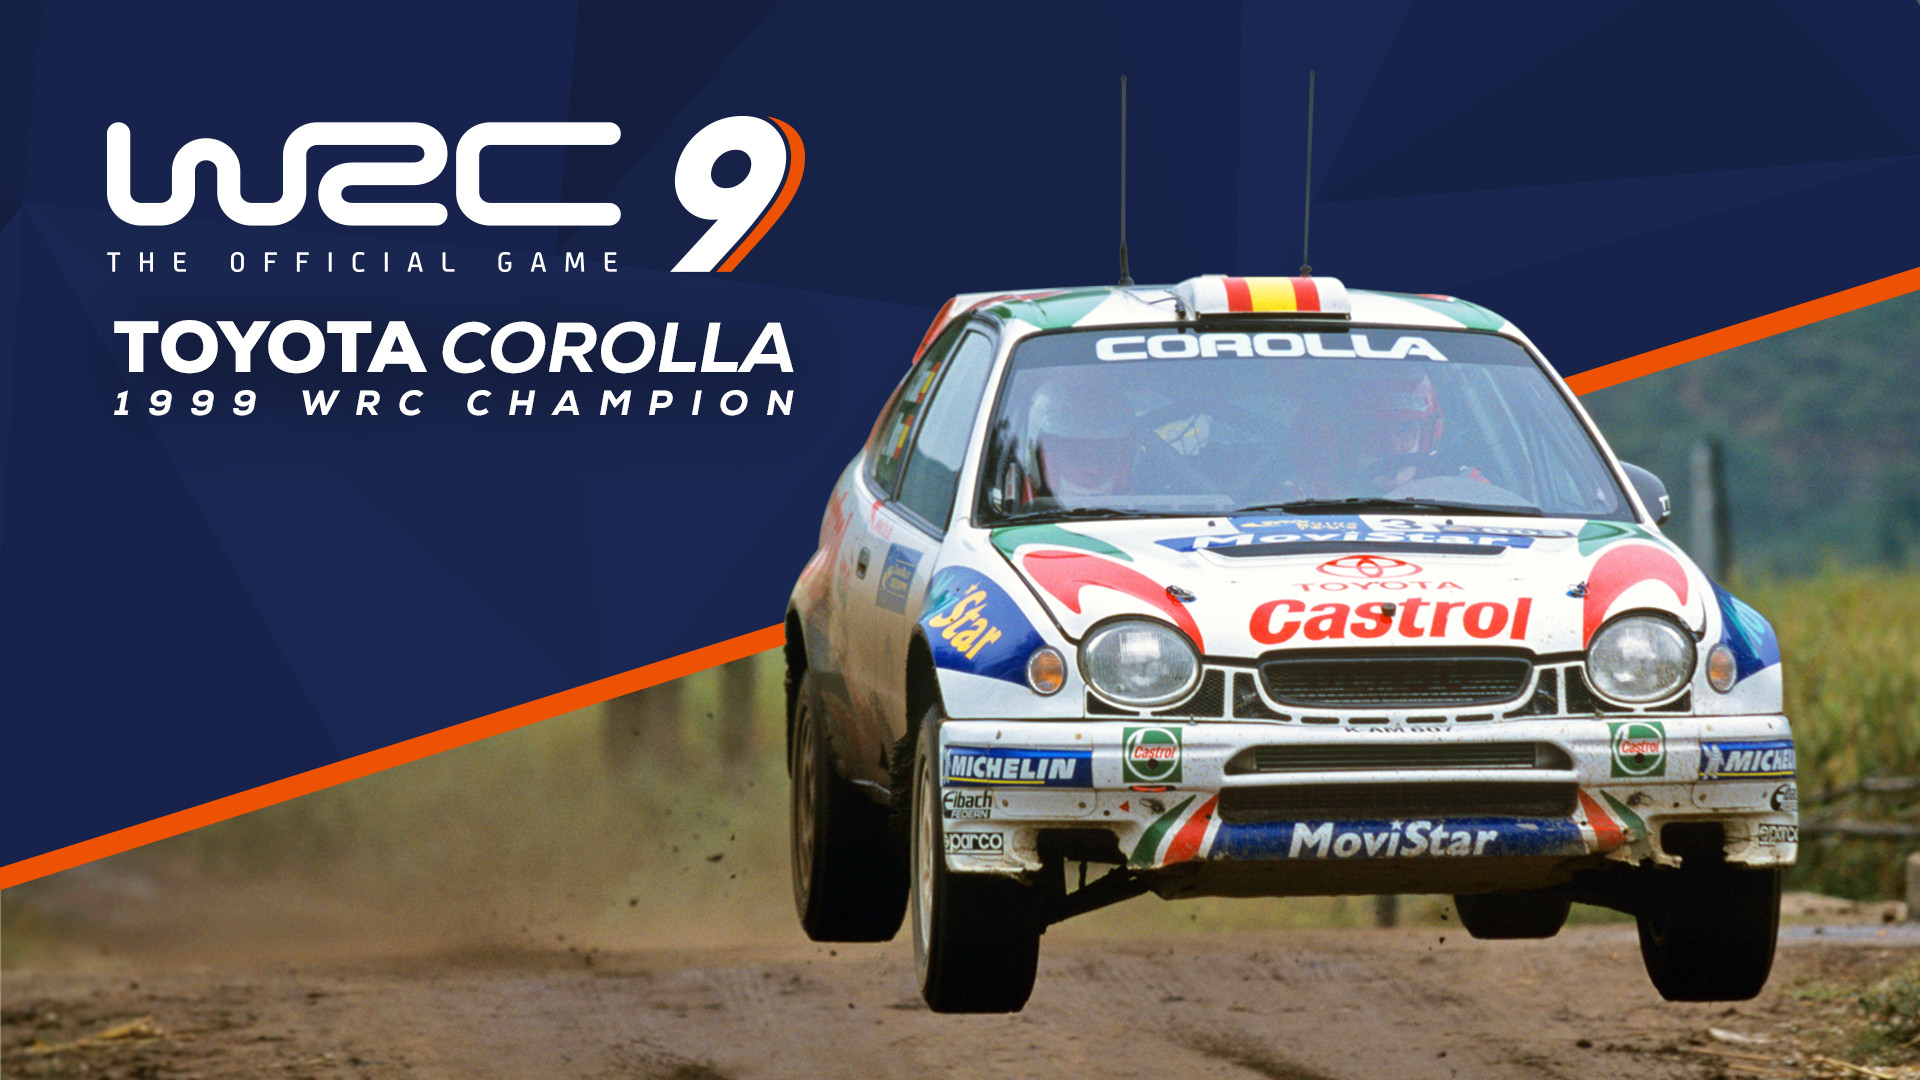 WRC 9 - Toyota Corolla 1999 DLC Steam CD Key 1.94 $